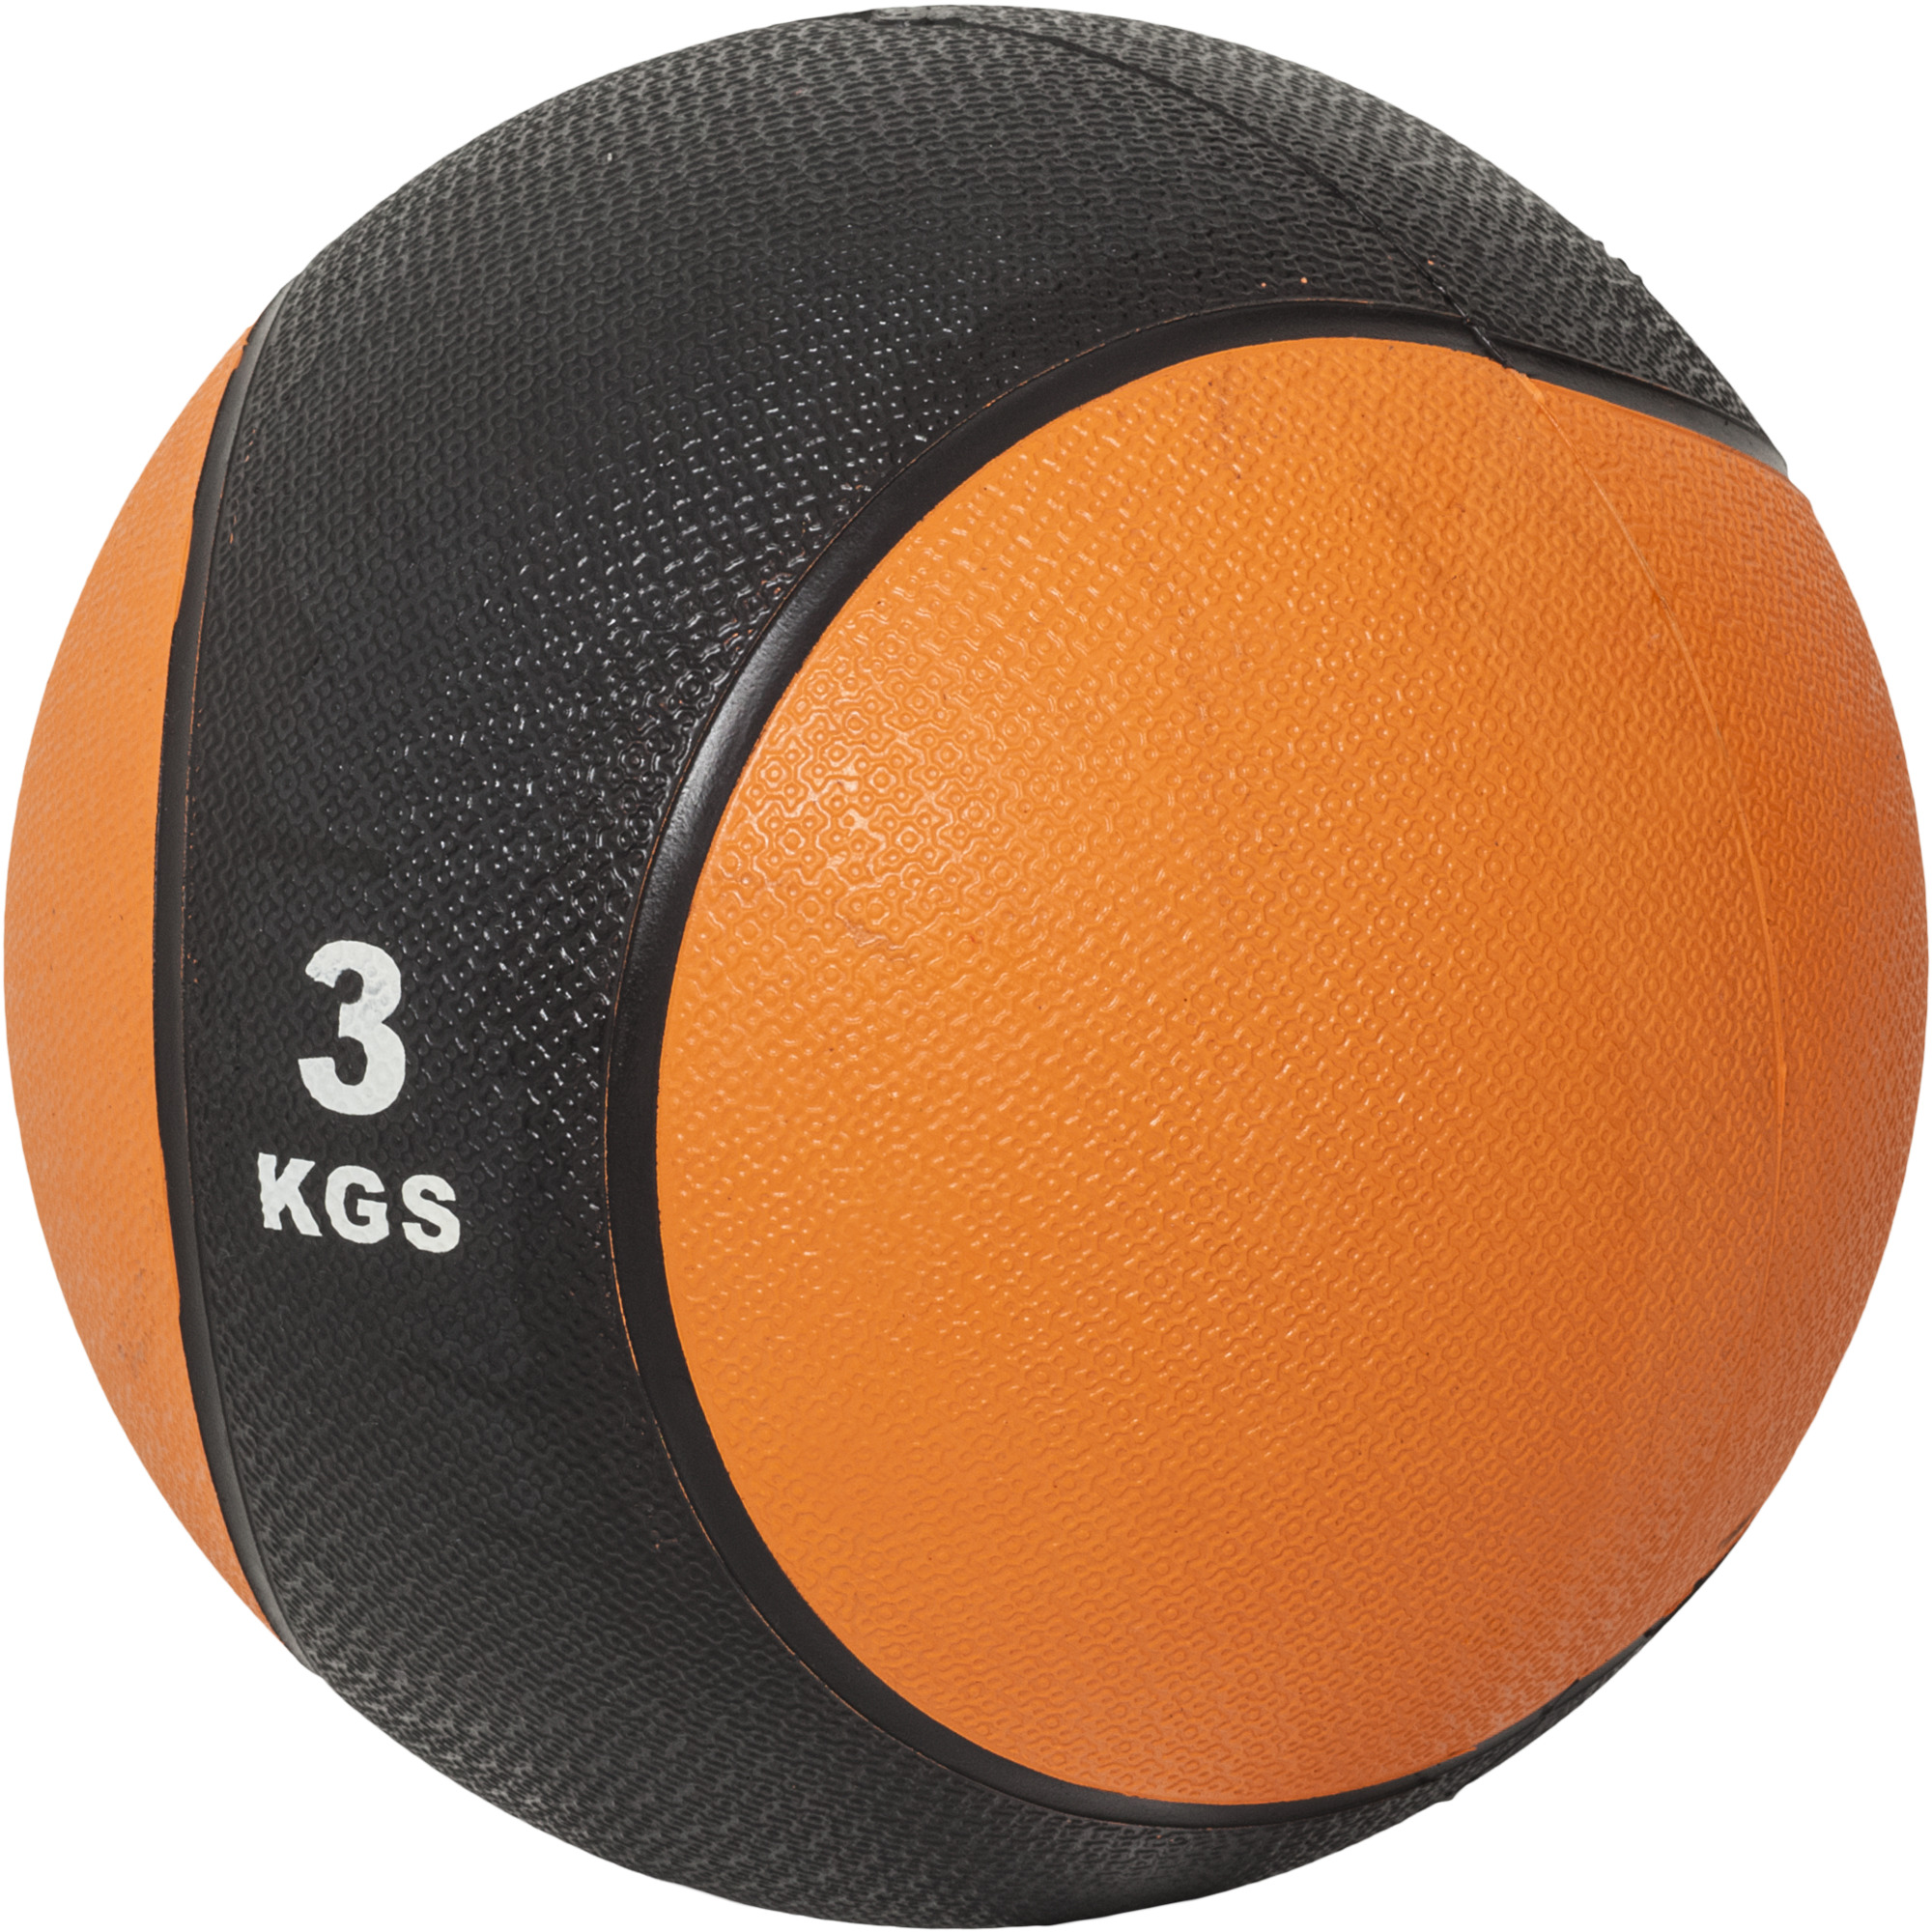 MÃ©decine ball de 3 KG - orange/noir - ballon de musculation